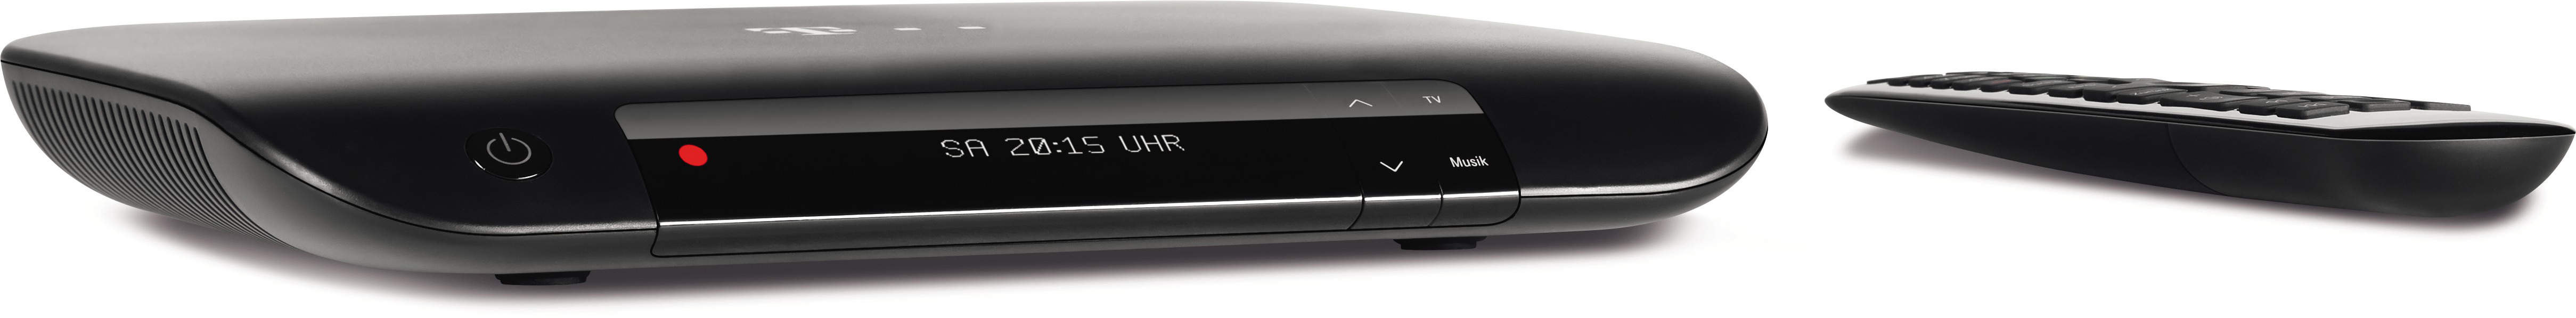 Festplattenrekorder (Schwarz) mit Ultra-HD-Receiver 401 TELEKOM